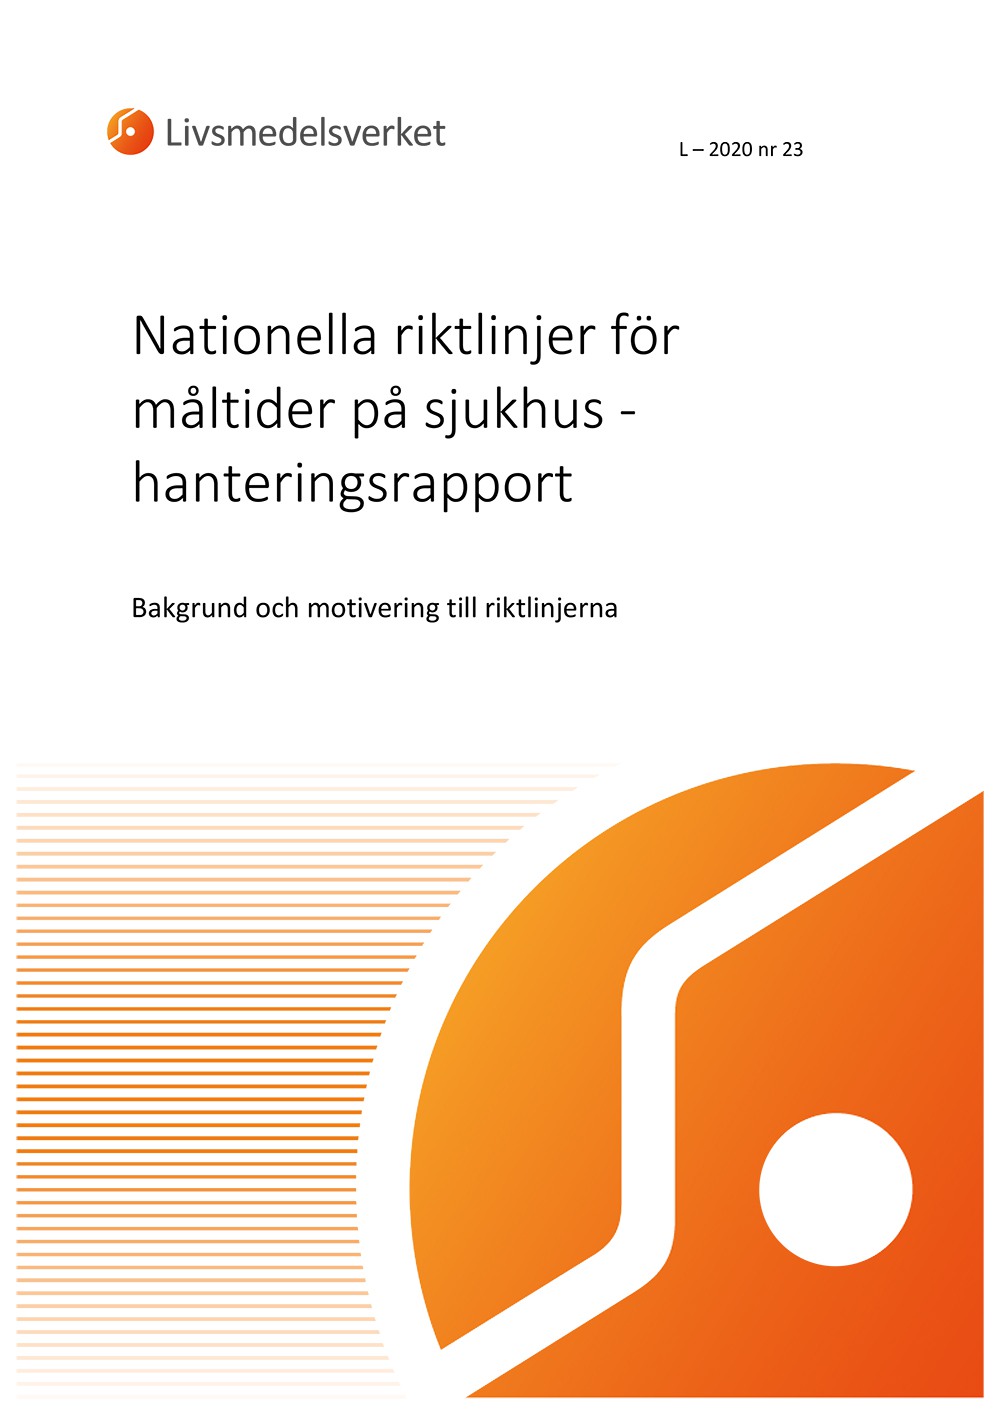 Framsida av rapport L 2020 nr 23 - Nationella riktlinjer för måltider på sjukhus